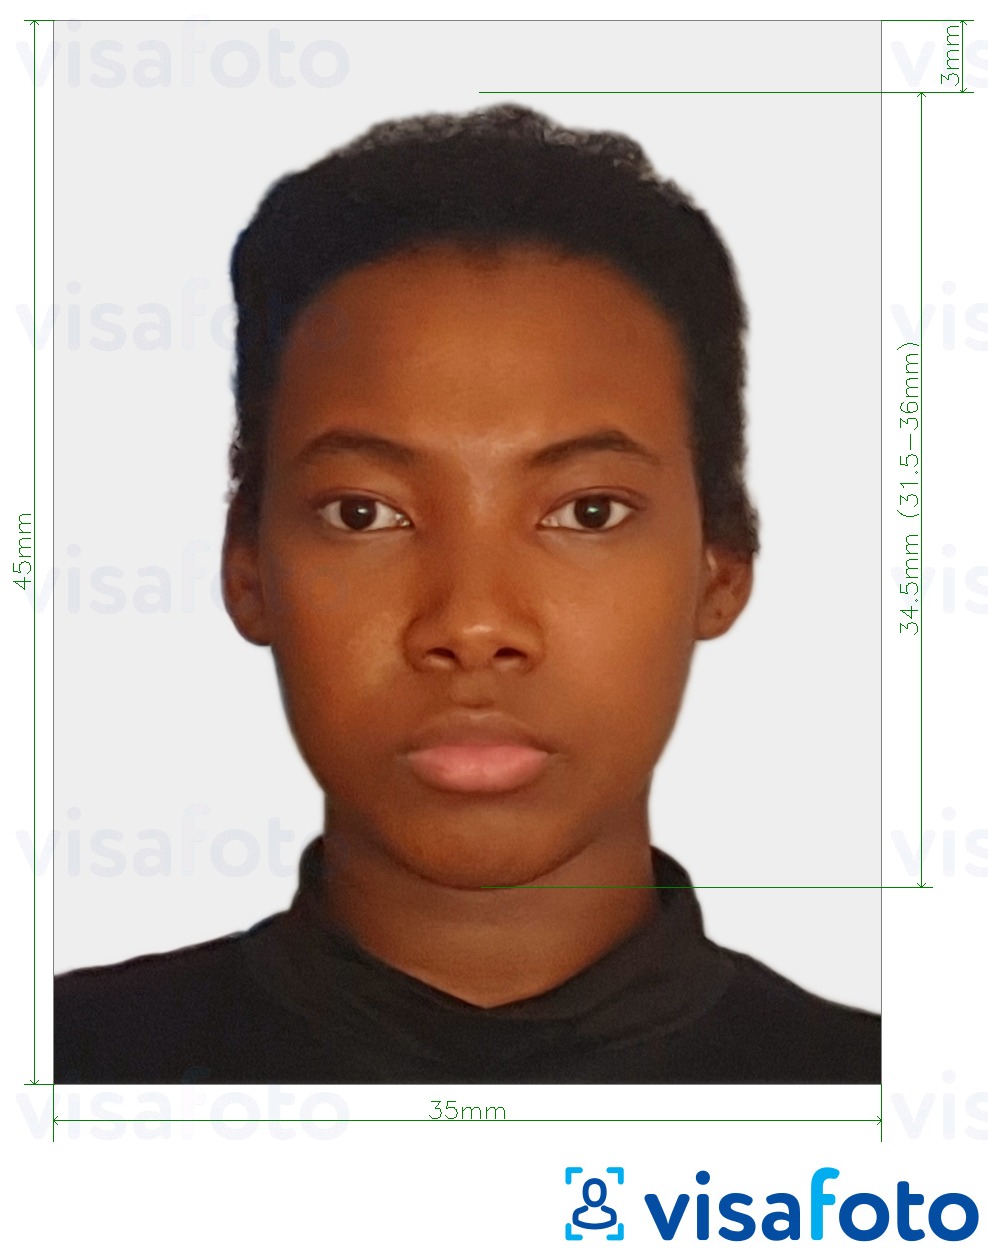 Contoh foto untuk Visa Sierra Leone 35x45 mm (3.5x4.5 cm) dengan spesifikasi saiz yang tepat.